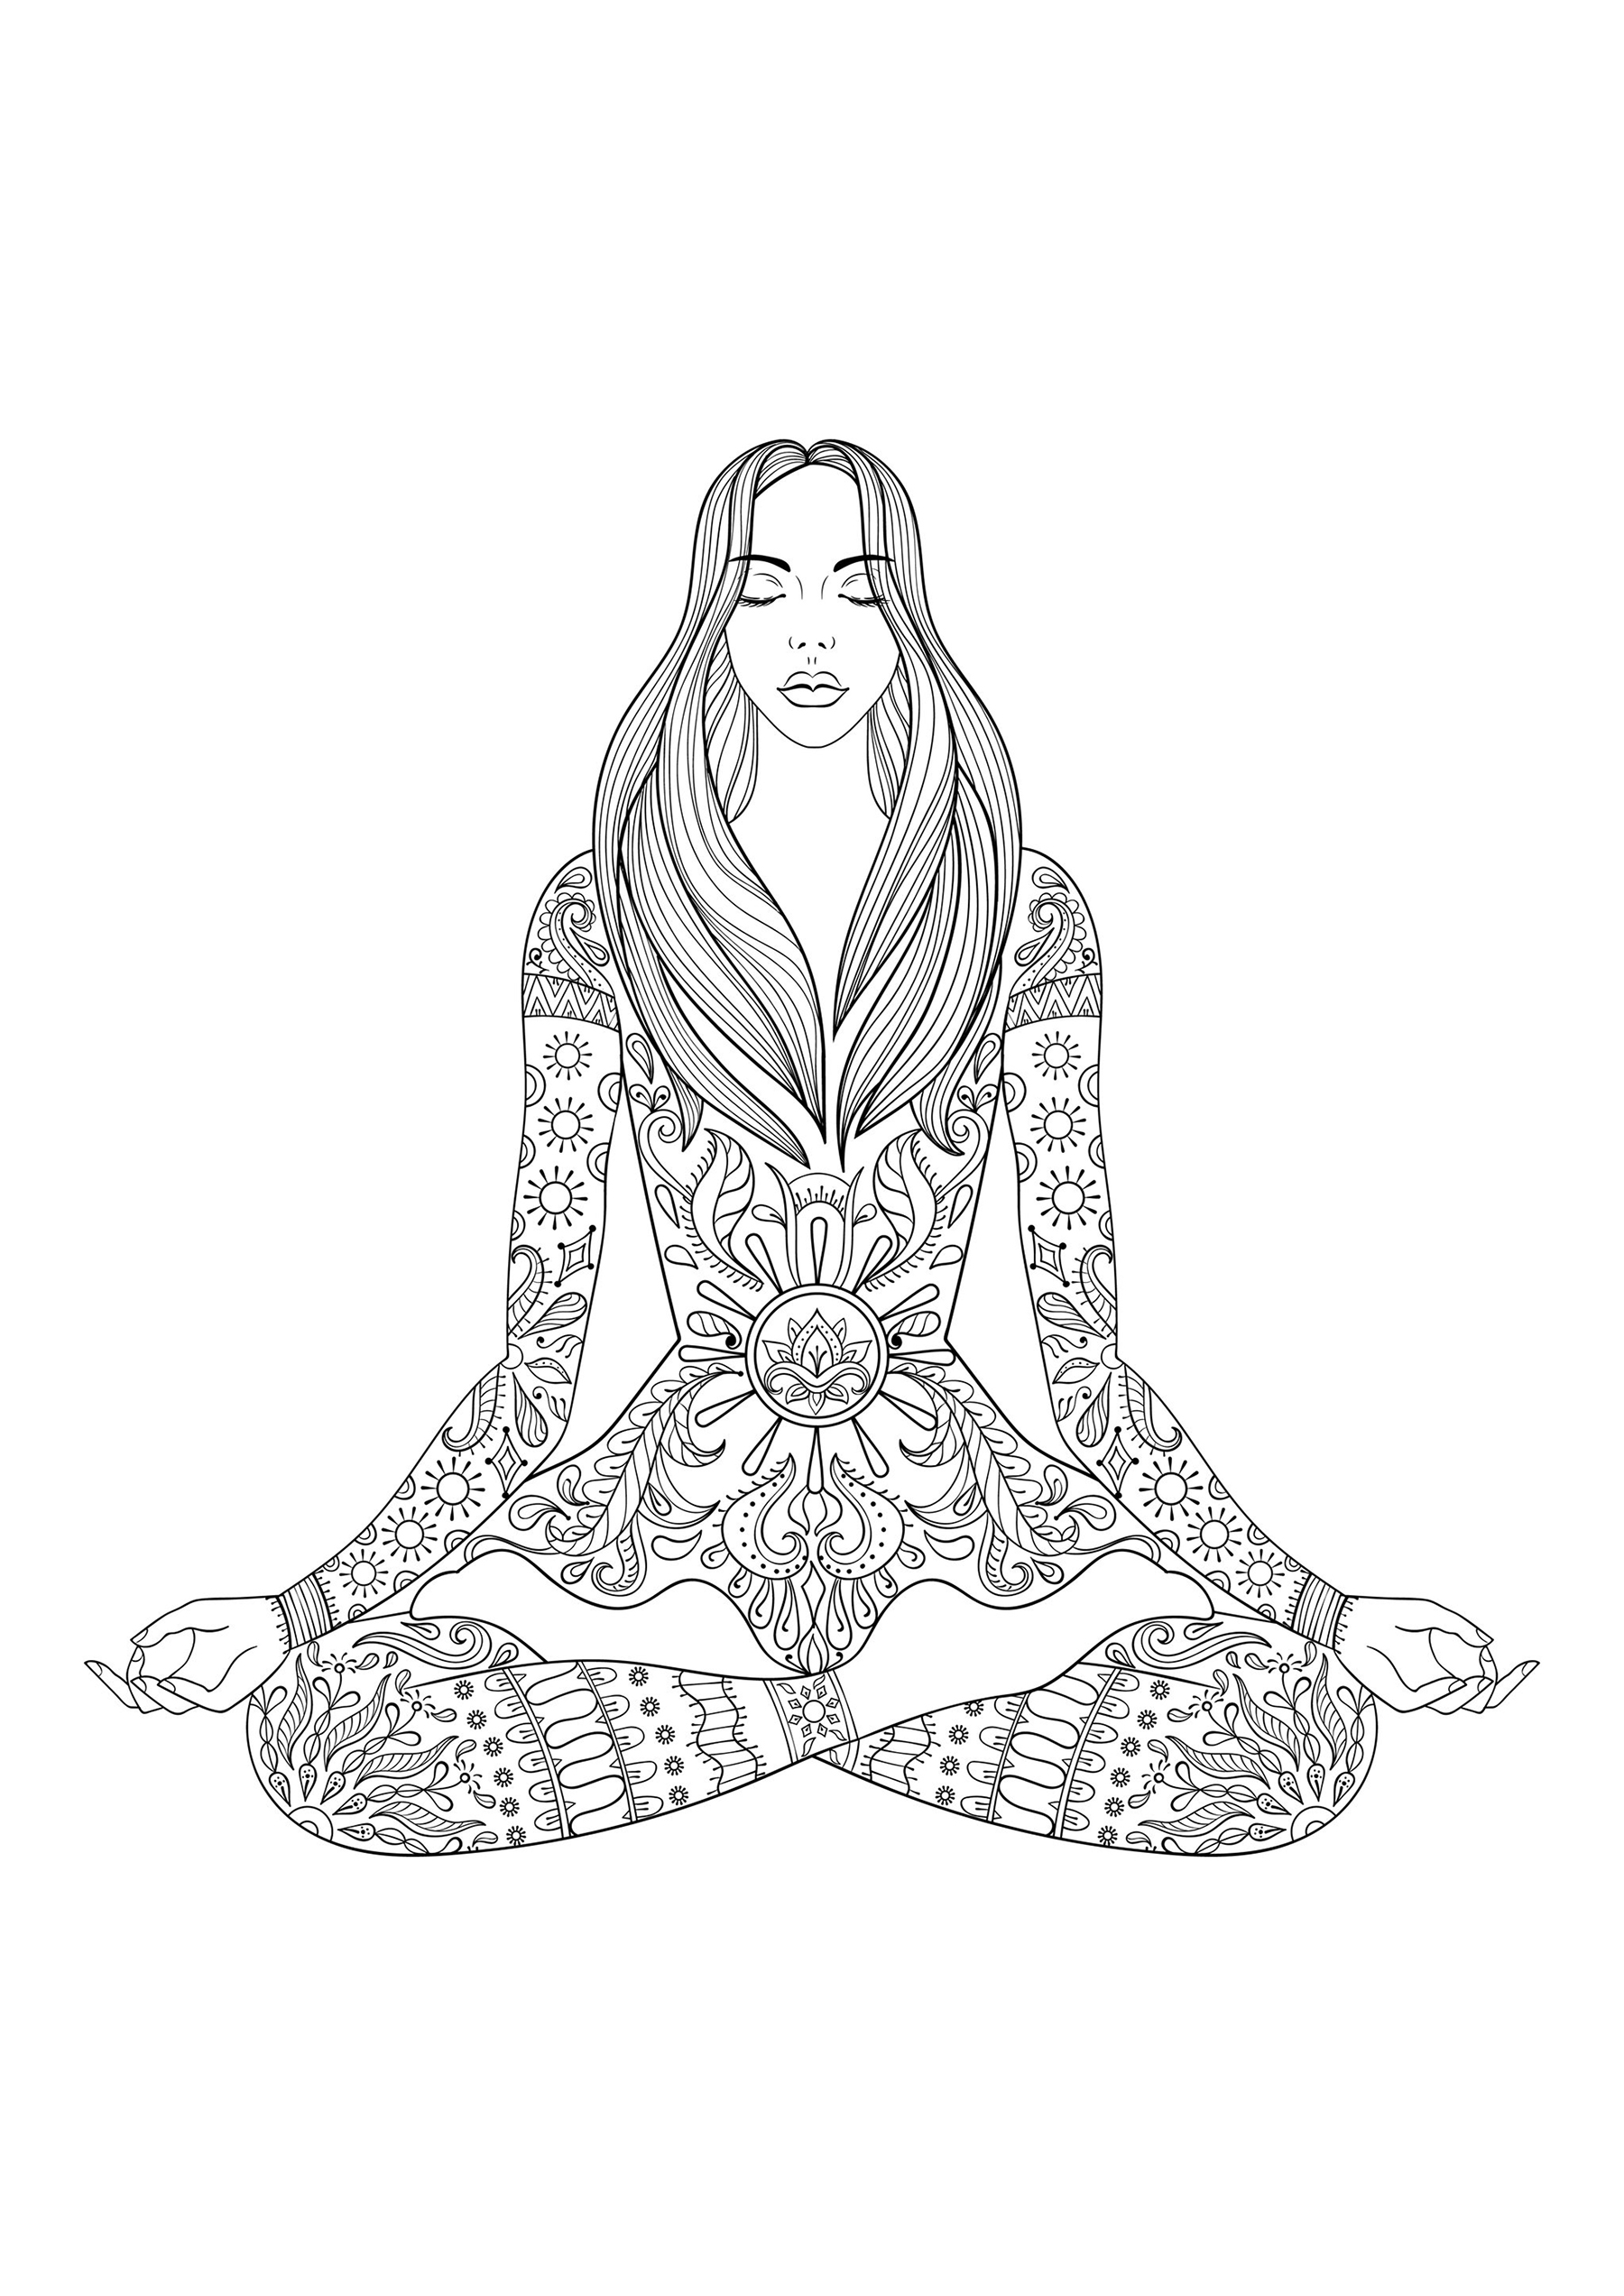 Femme assise en train de méditer, avec nombreux motifs sur son corps, Artiste : Ksym   Source : 123rf